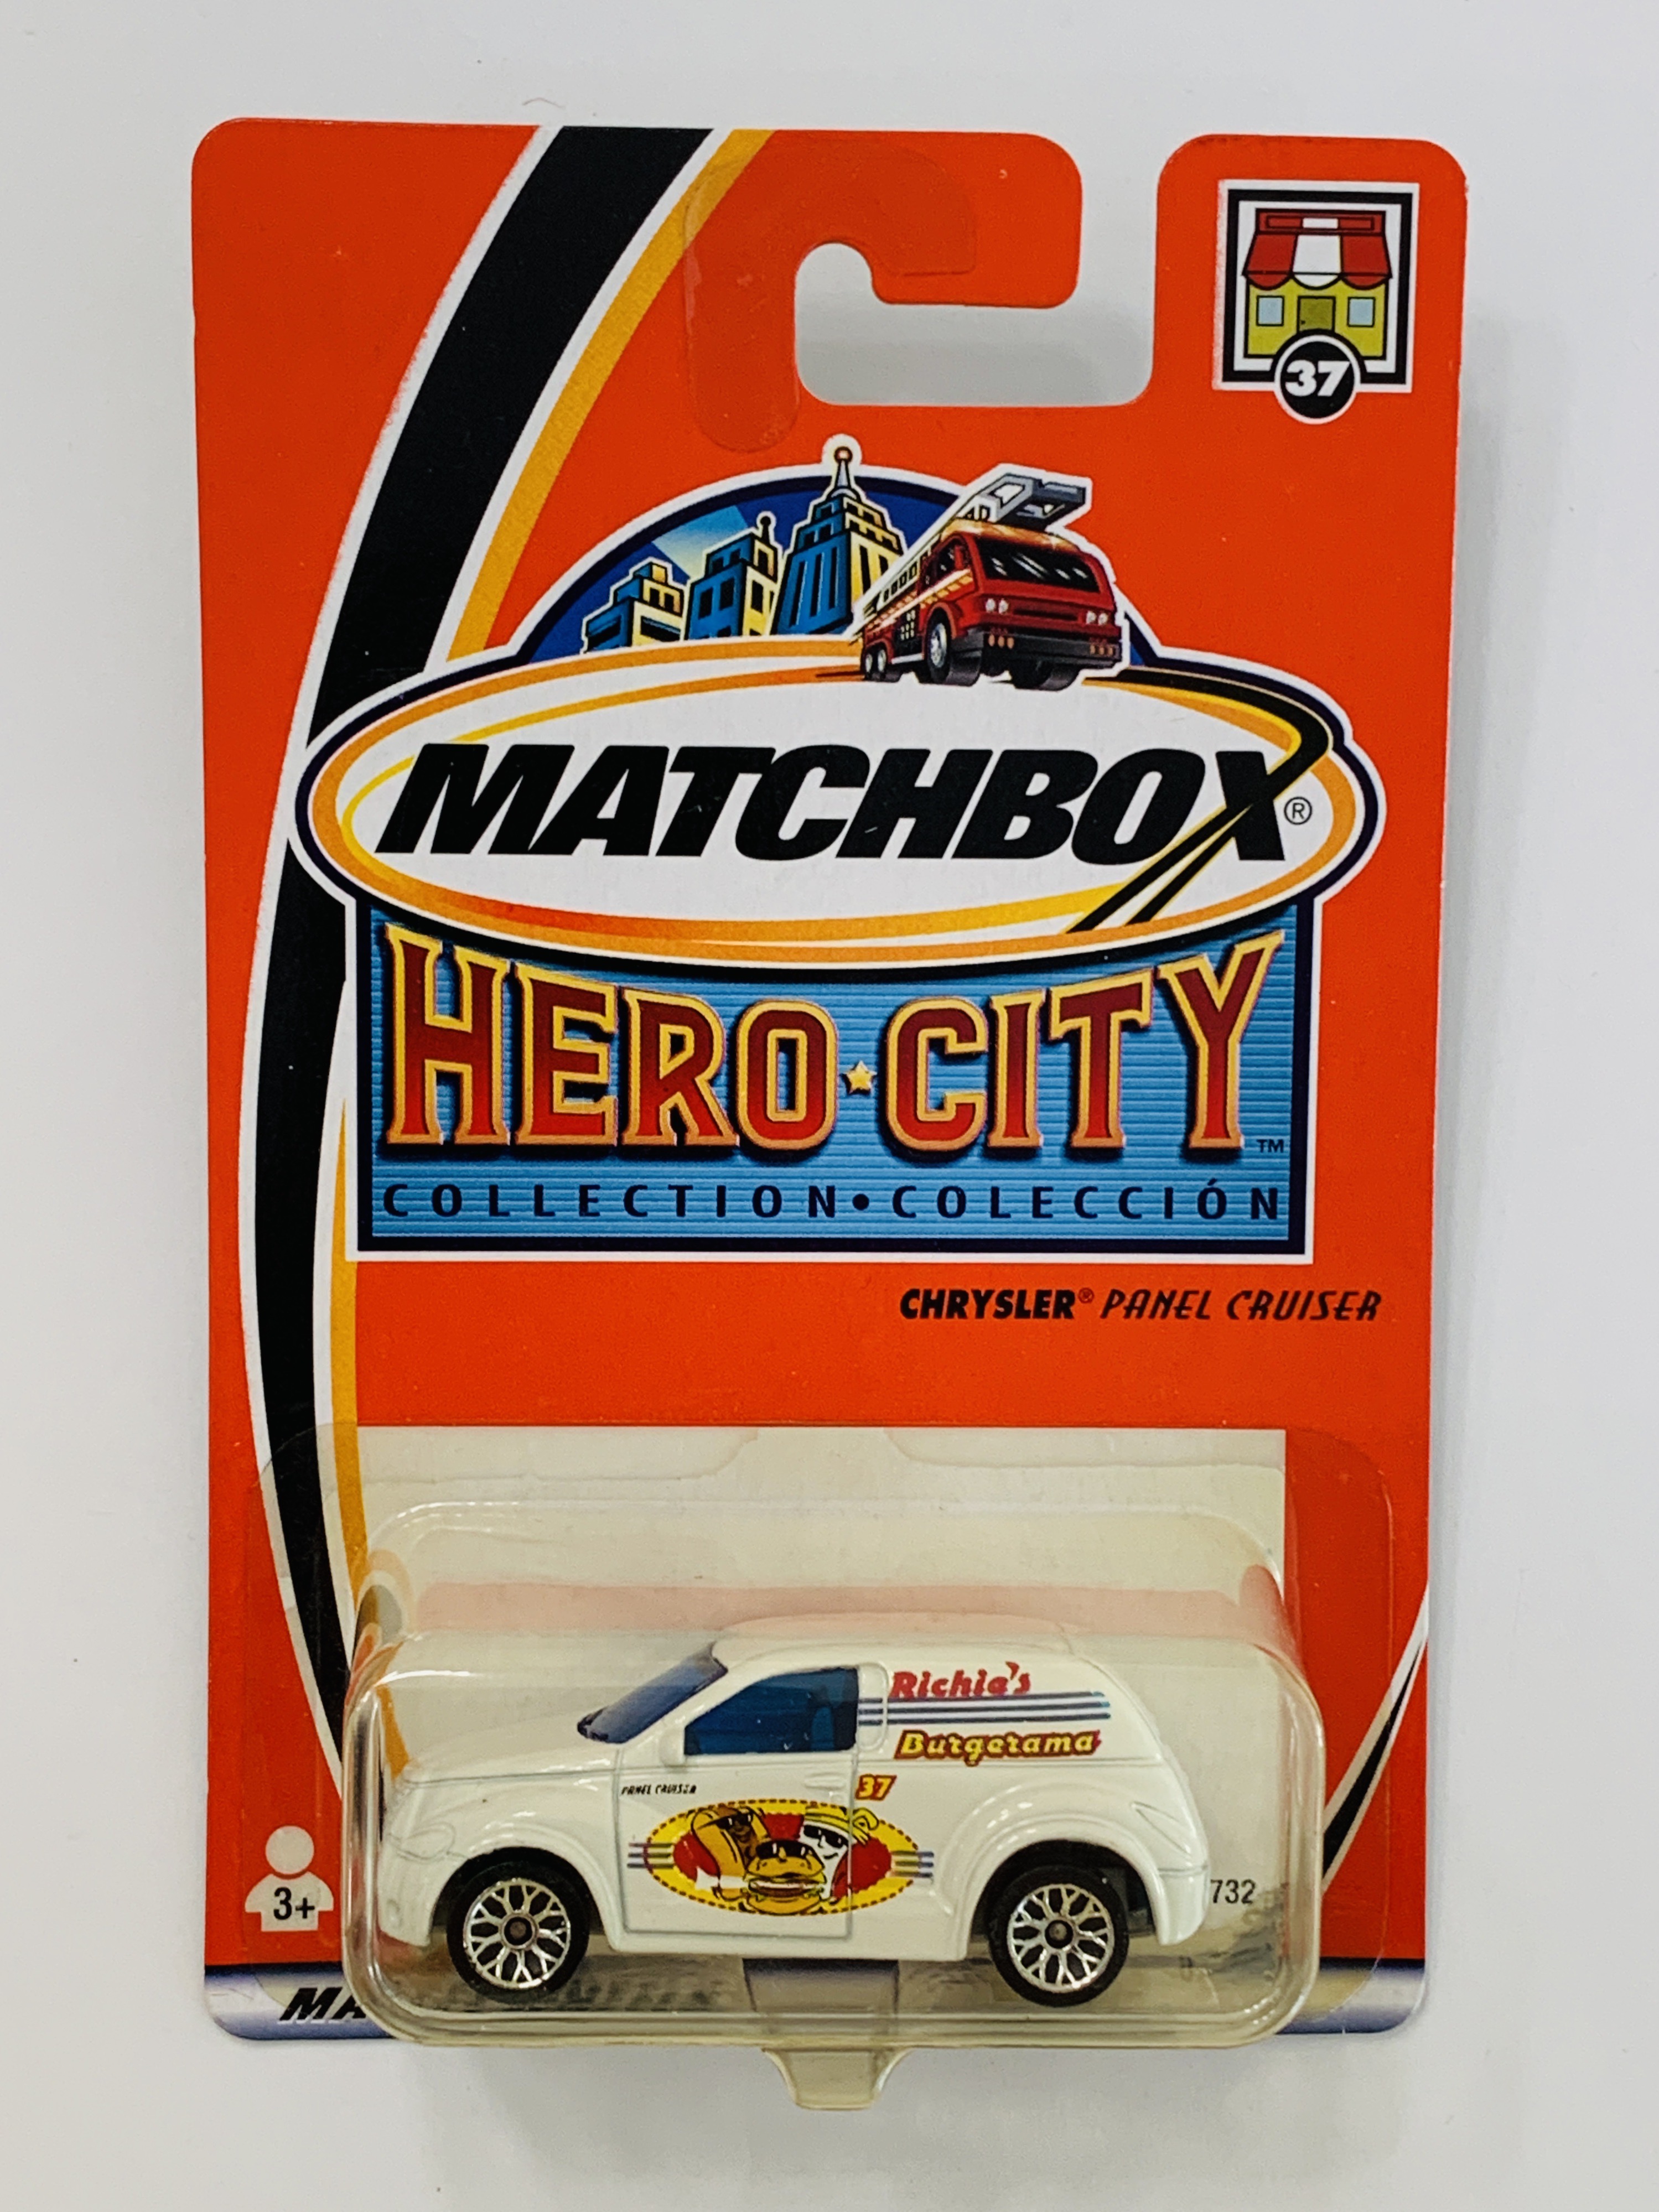 Matchbox Hero City #37 Chrysler Panel Cruiser